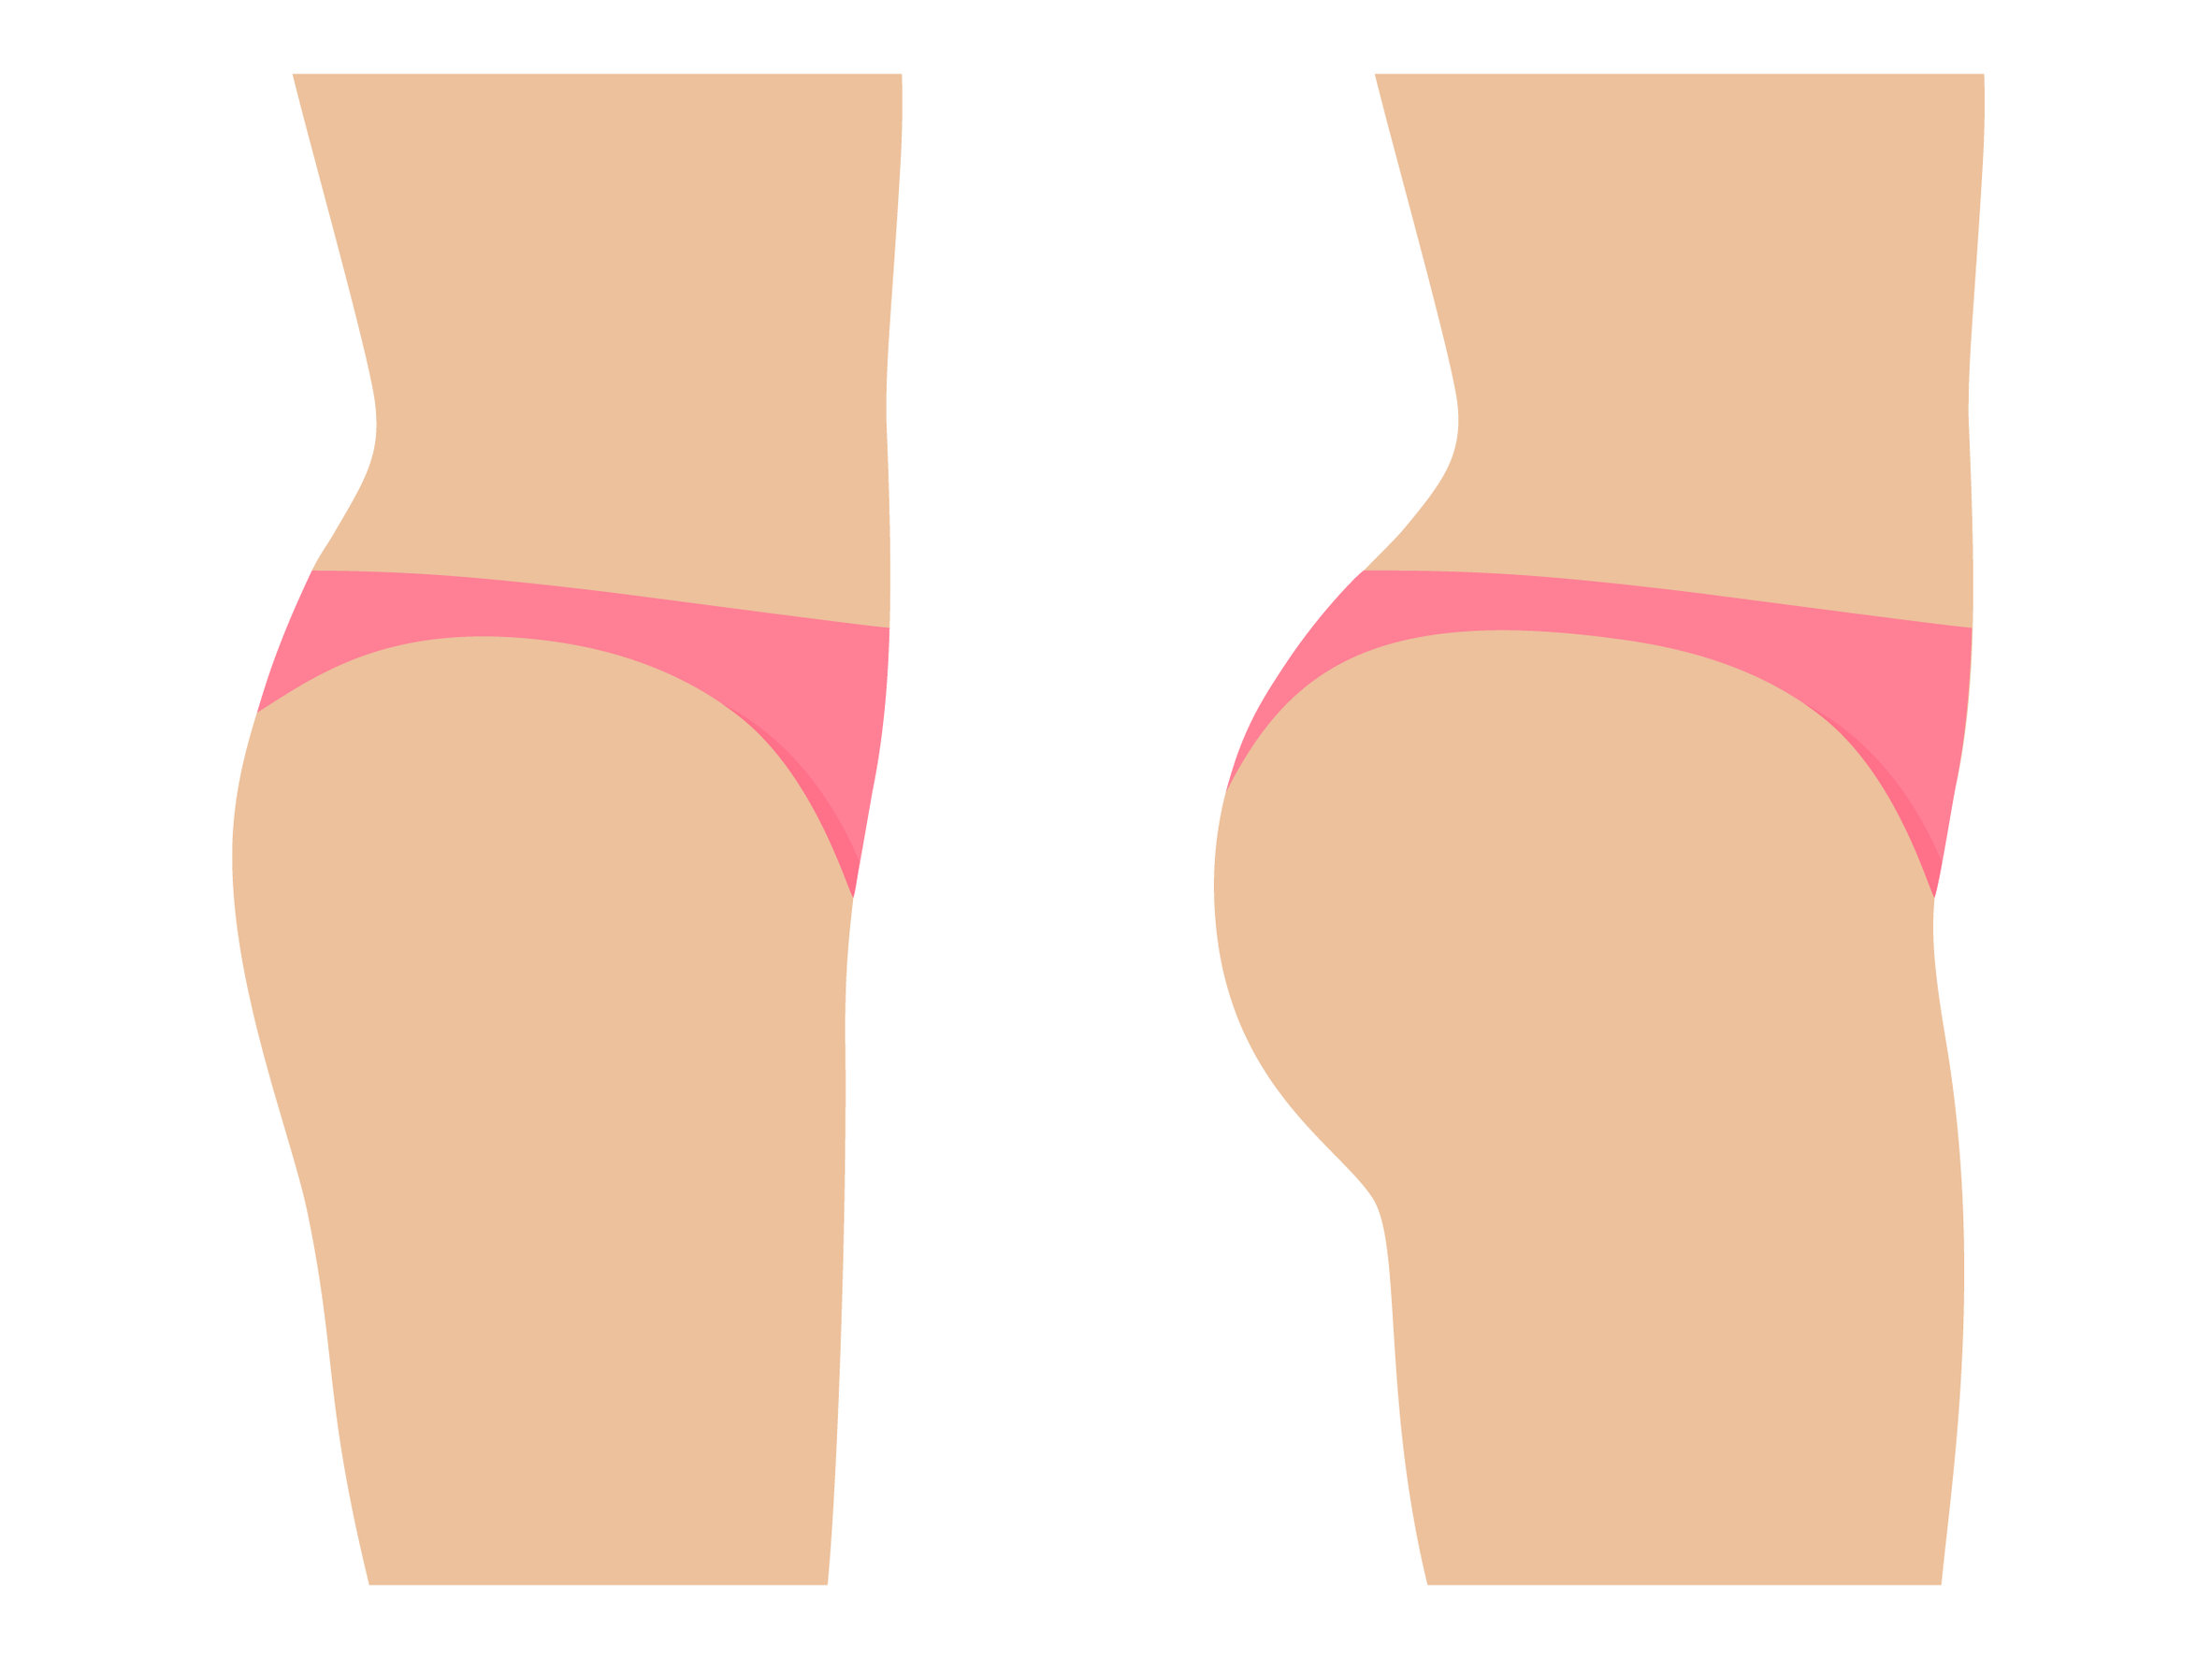 Are Brazilian Butt Lifts a Safe Procedure?